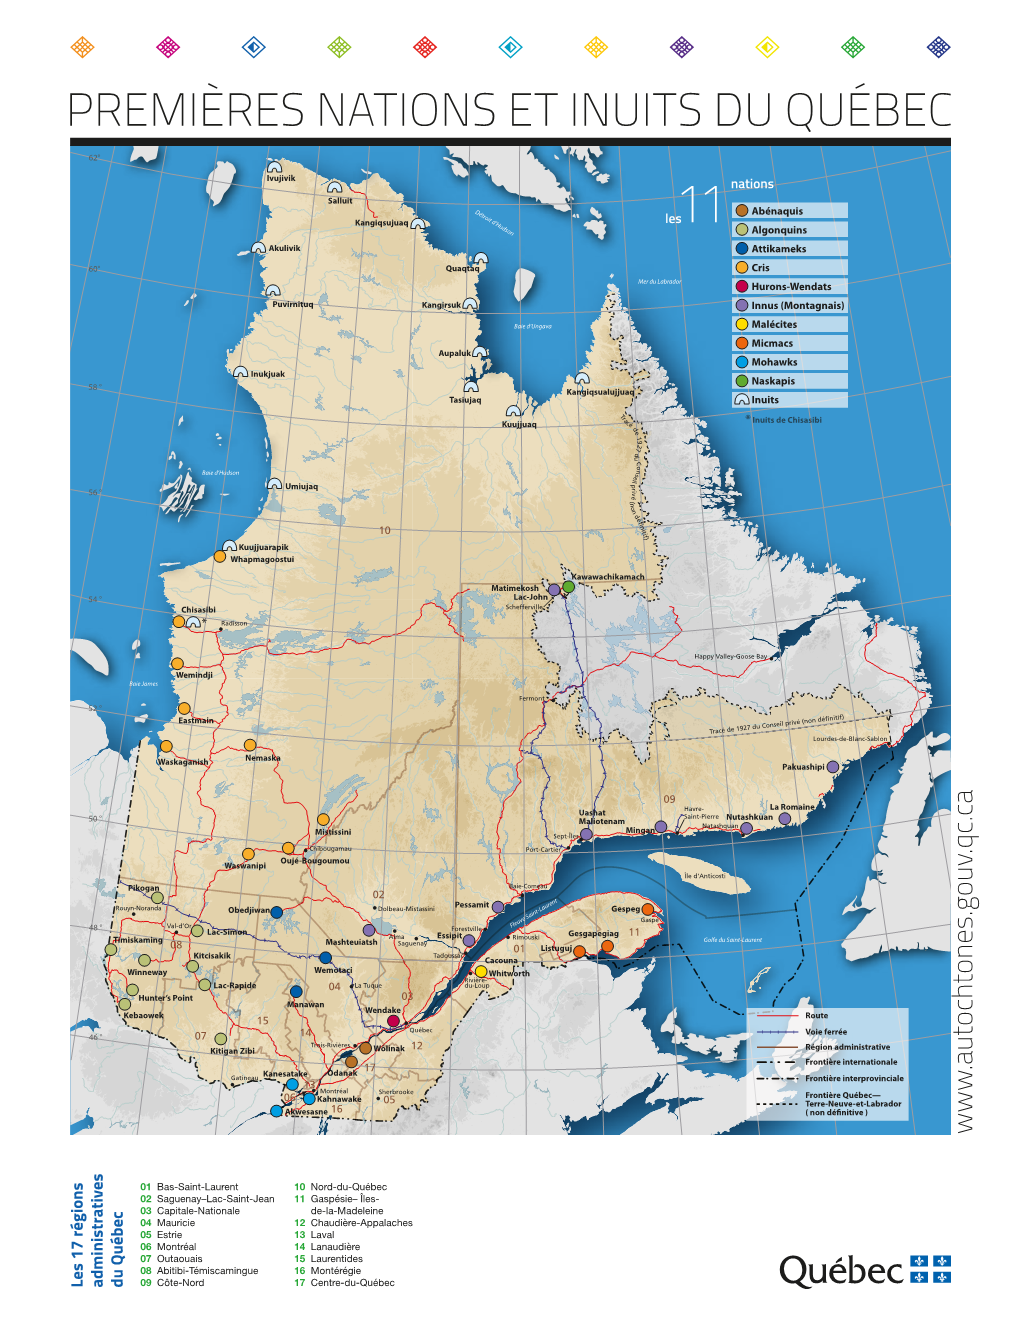 Premières Nations Et Inuits Du Québec 84 ° 82° 80° 78° 76° 74° 72° 70° 68° 66° 64° 62° 60° 58° 56° 54° 52° 62°